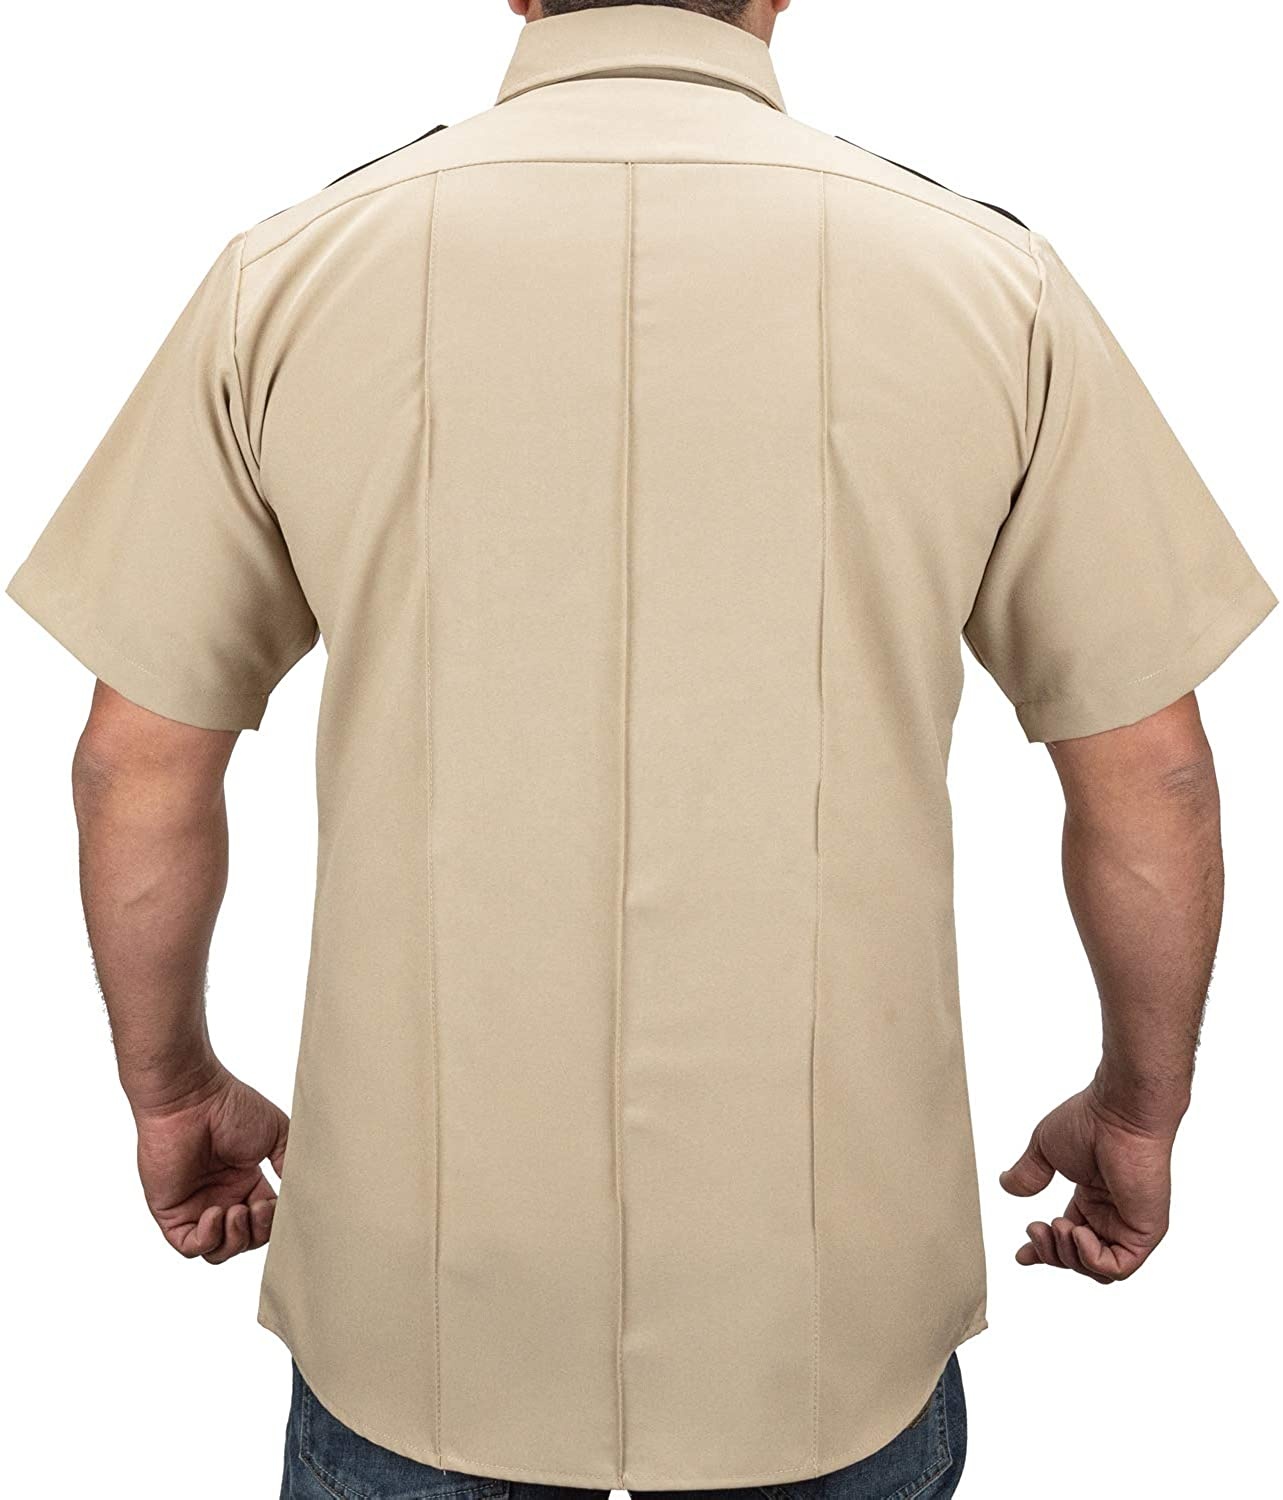 주머니가 있는 짧은 소매 남자의 보안 셔츠 감시 제복을 주문 설계하십시오